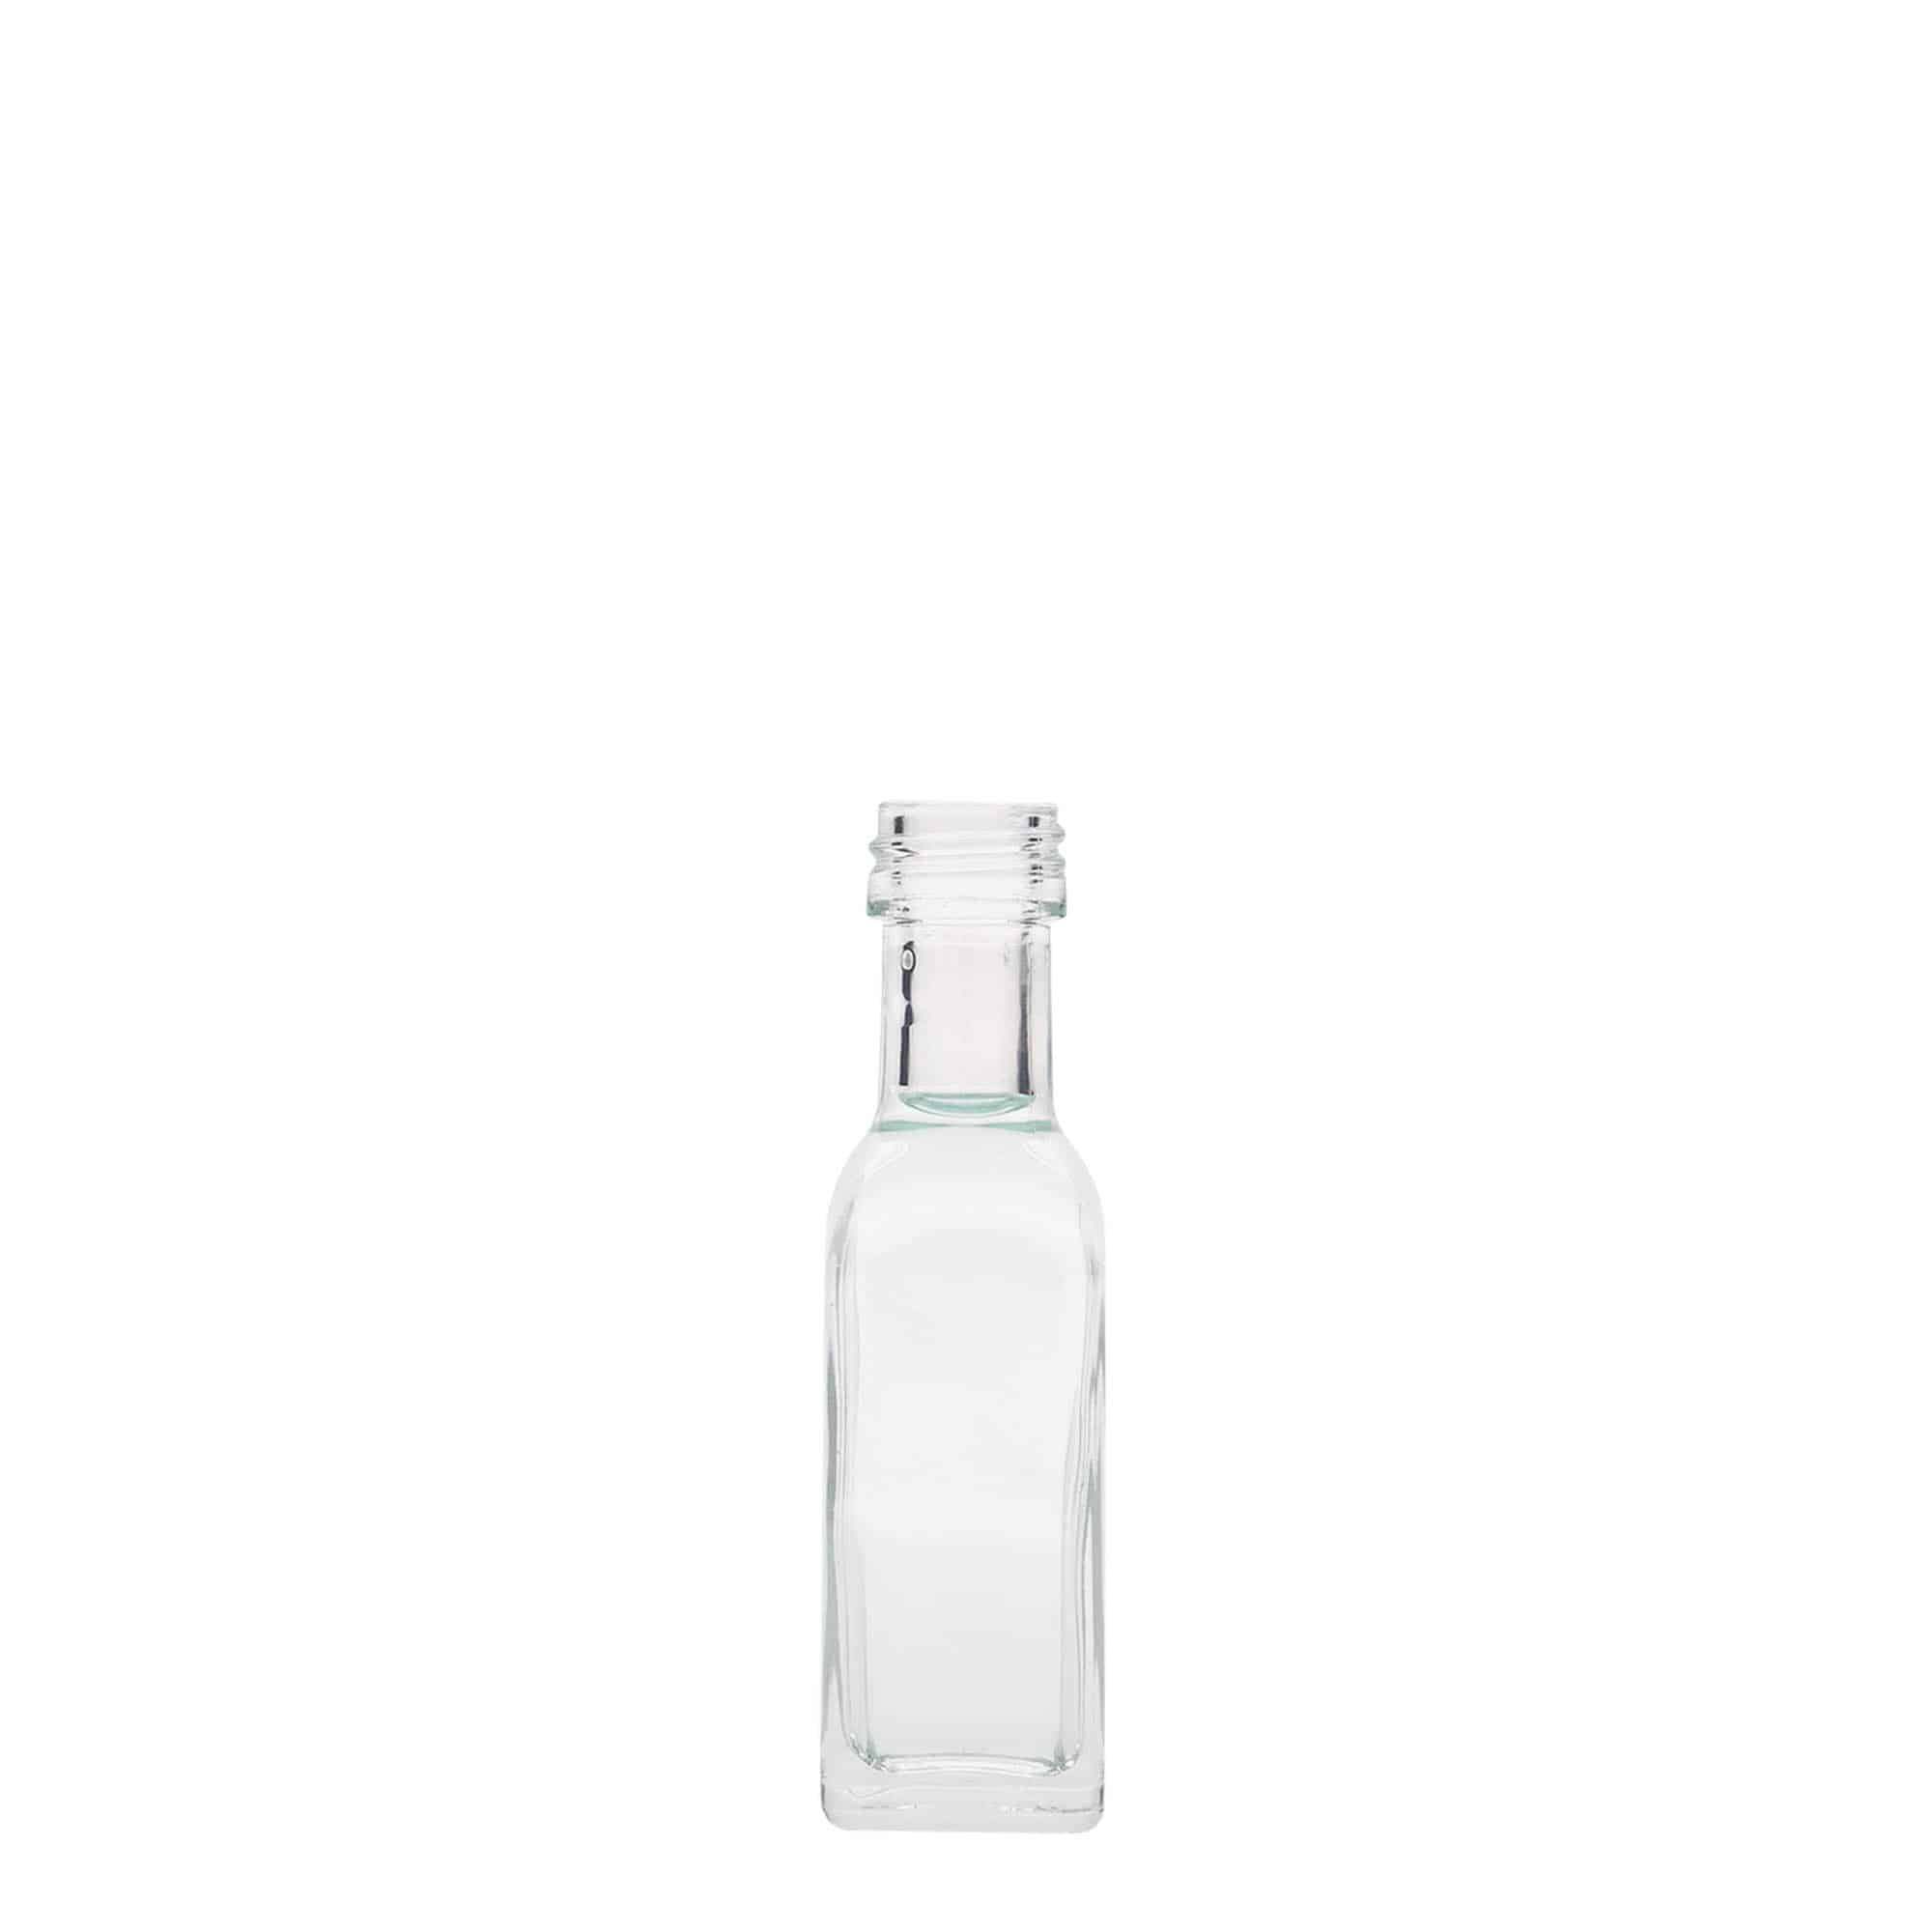 20 ml glasflaske 'Marasca', kvadratisk, åbning: PP 18